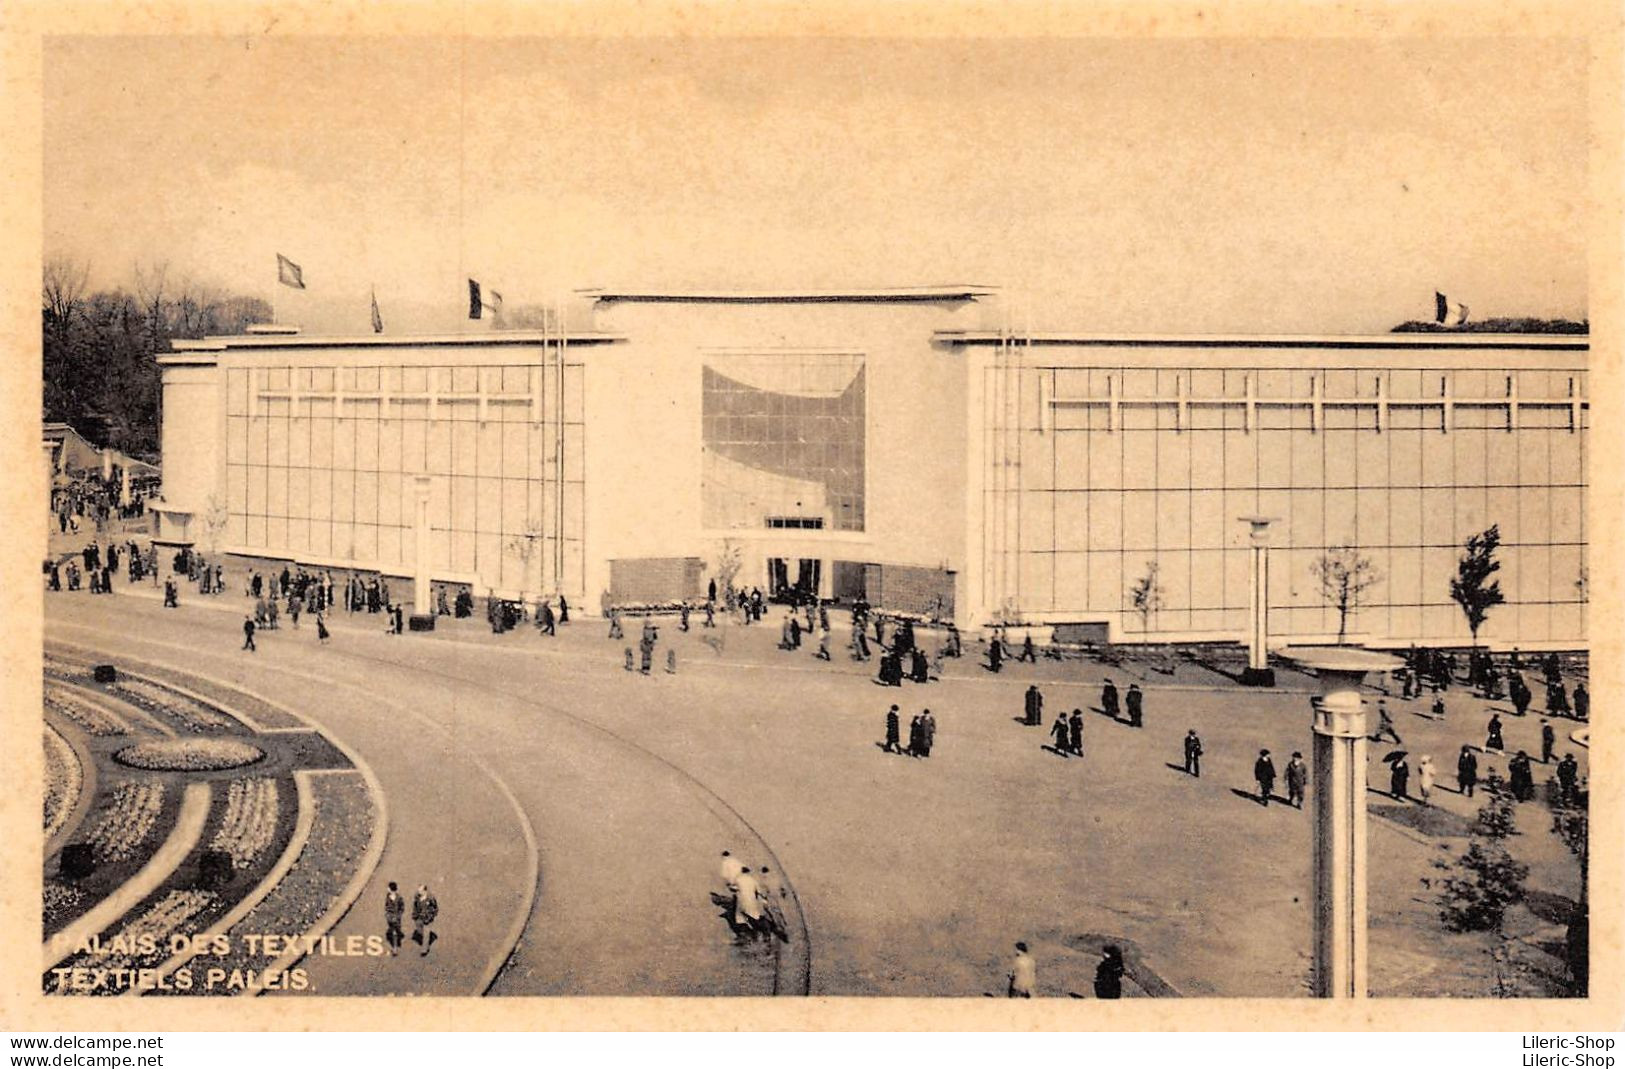 Exposition Universelle 1935 - PALAIS DES TEXTILES / TEXTIELS PALEIS - Expositions Universelles